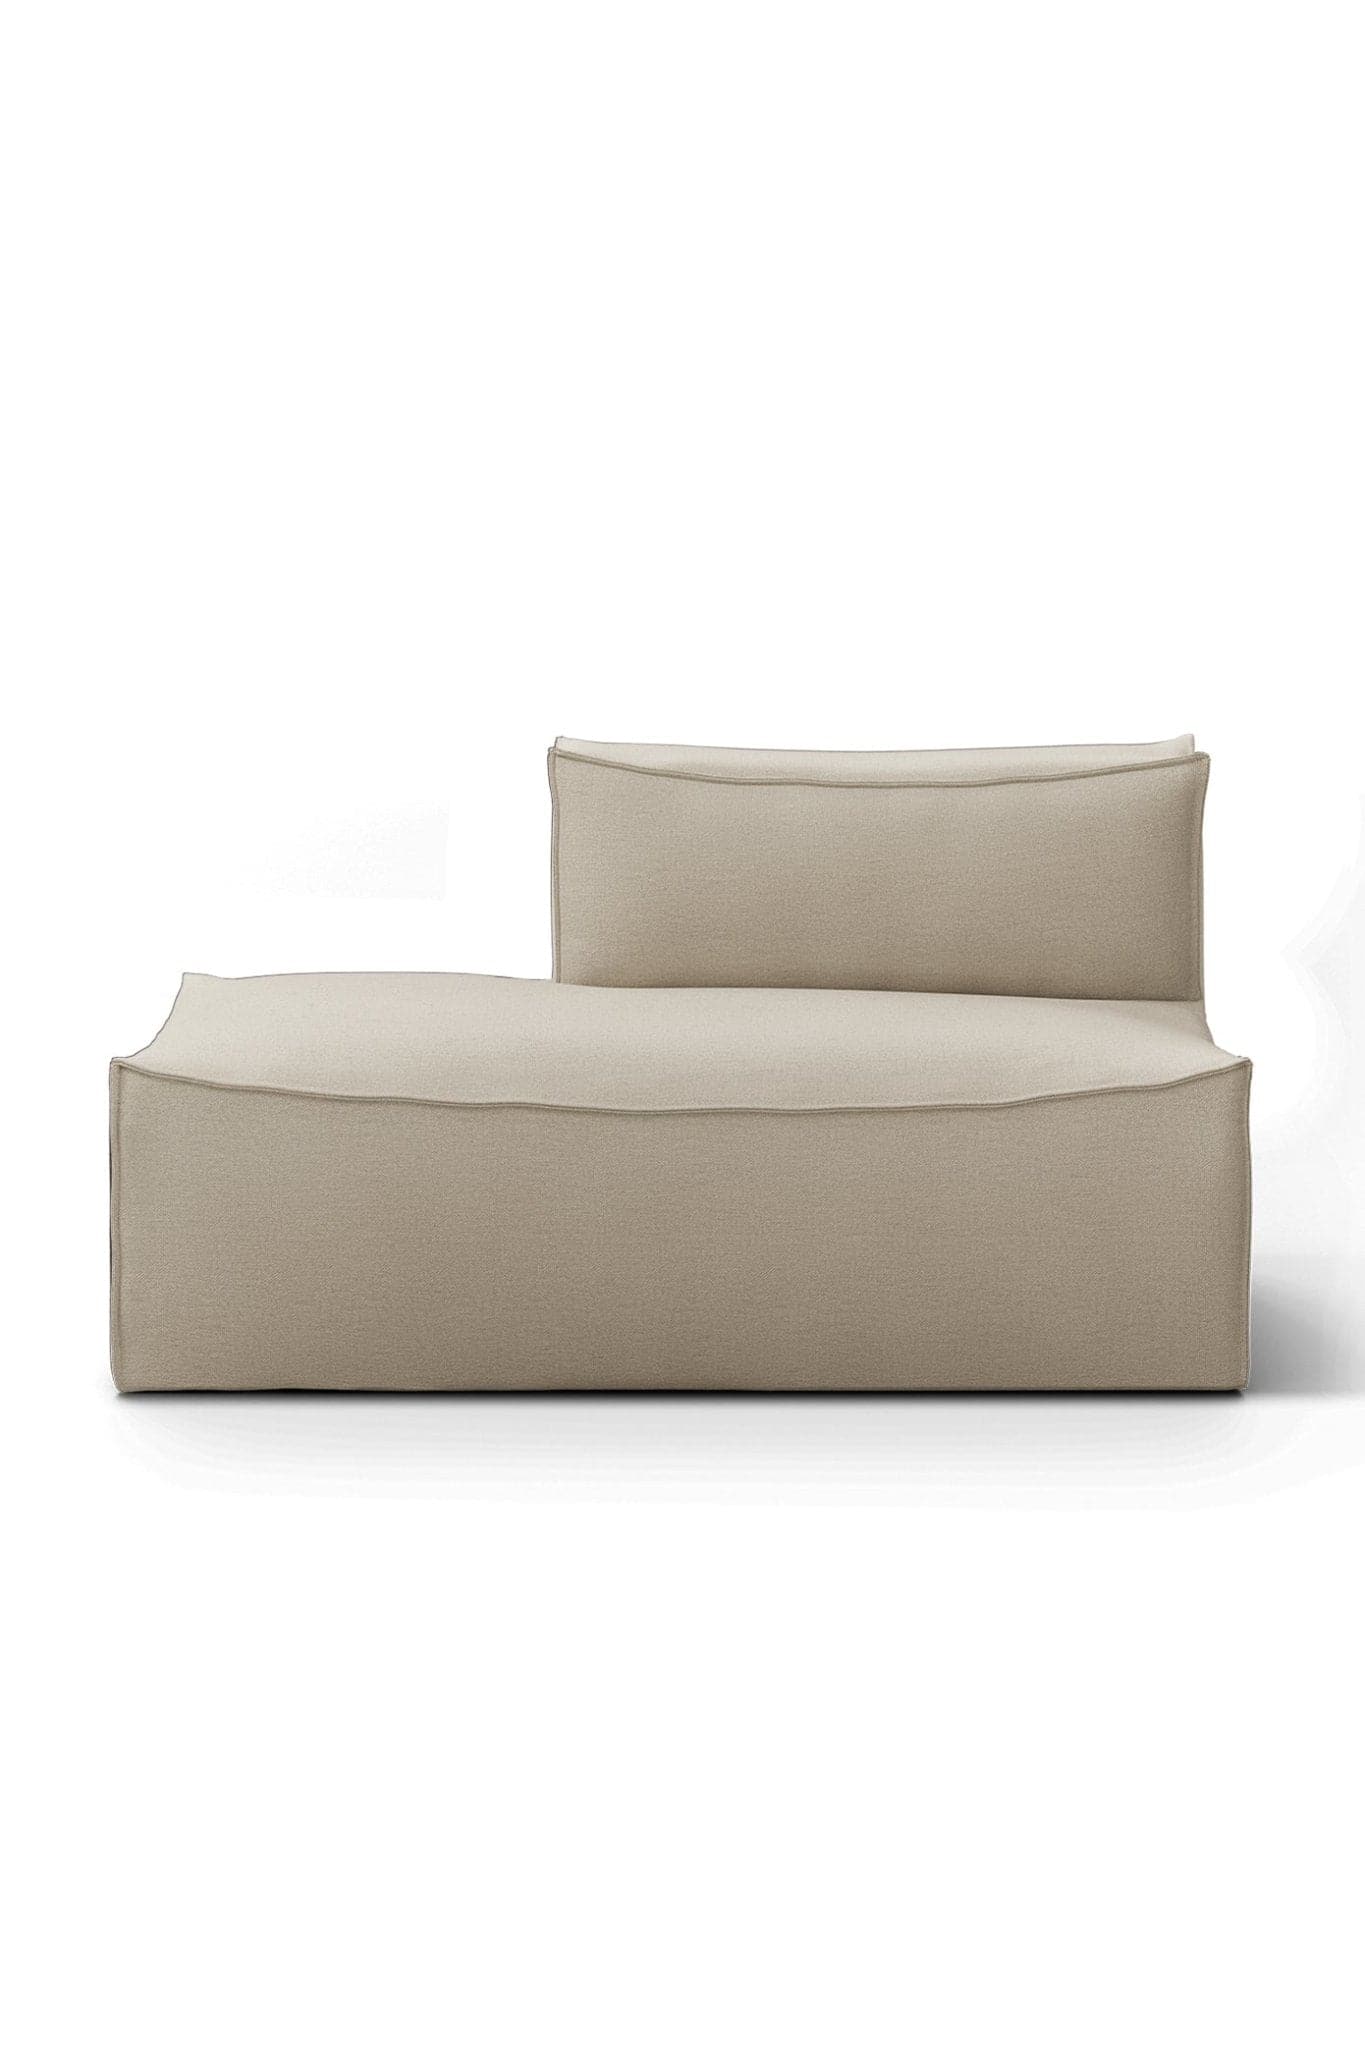 Ferm Living Catena Sofa - Small - Marz Designs AUFerm Living